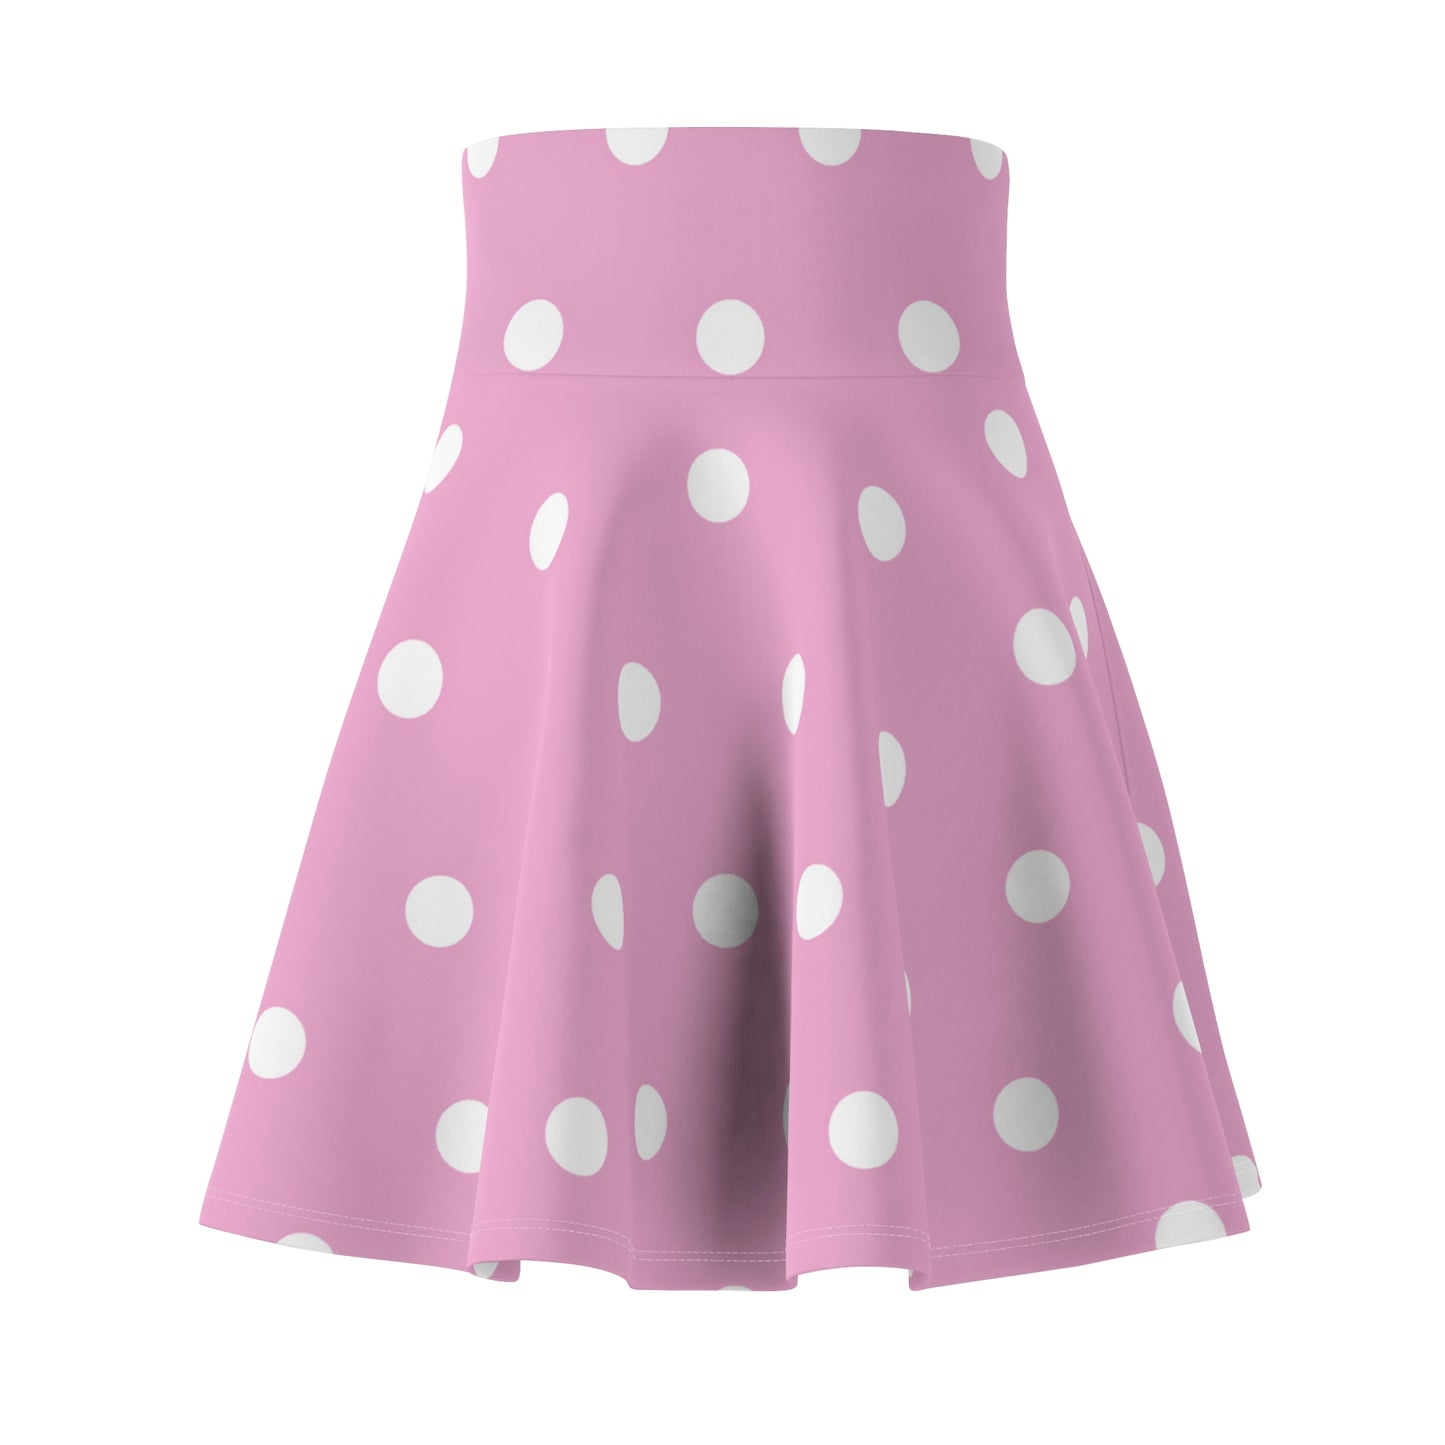 Women's Skater Skirt Pink Polka Dot, Cute High Waist Circle Skirt, Full A Line Skirt